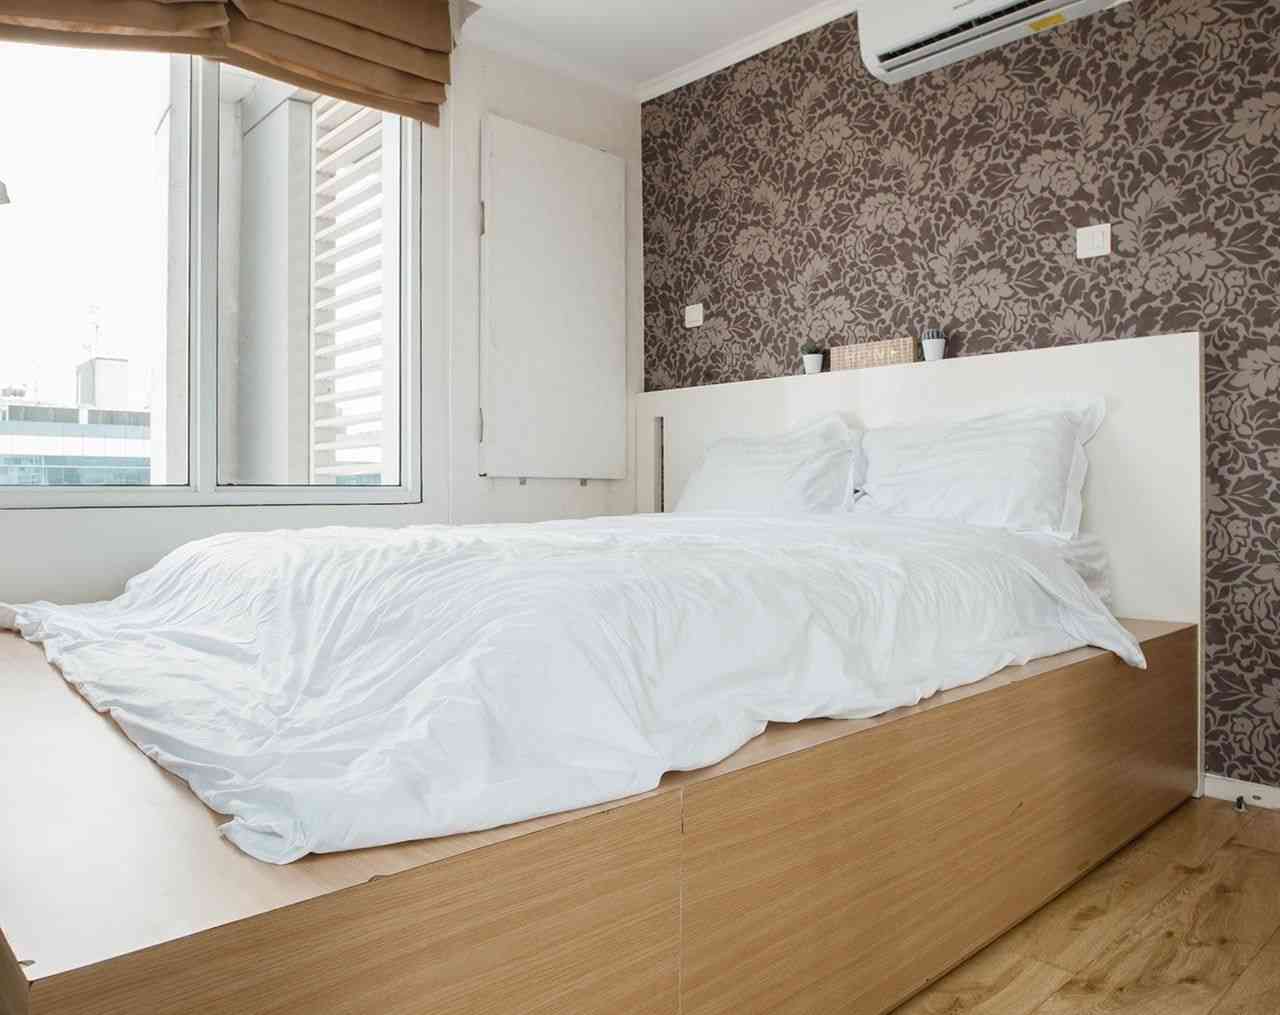 2 Bedroom on 21st Floor for Rent in FX Residence - fsu841 3